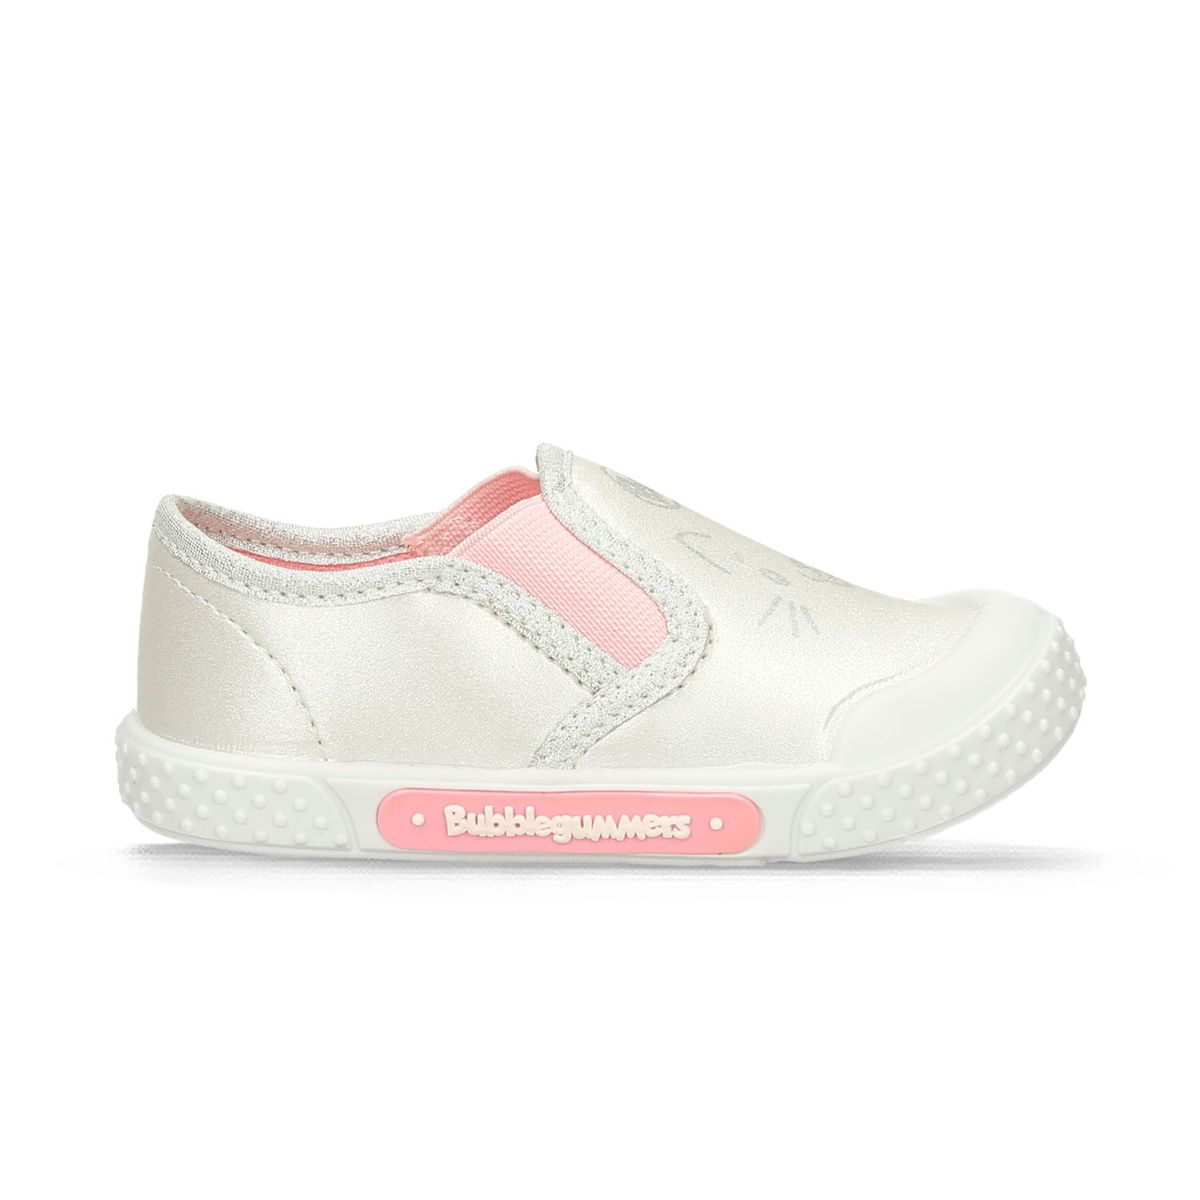 Zapatos Casuales Blanco/Rosado Bubblegummers Maravilla Niña